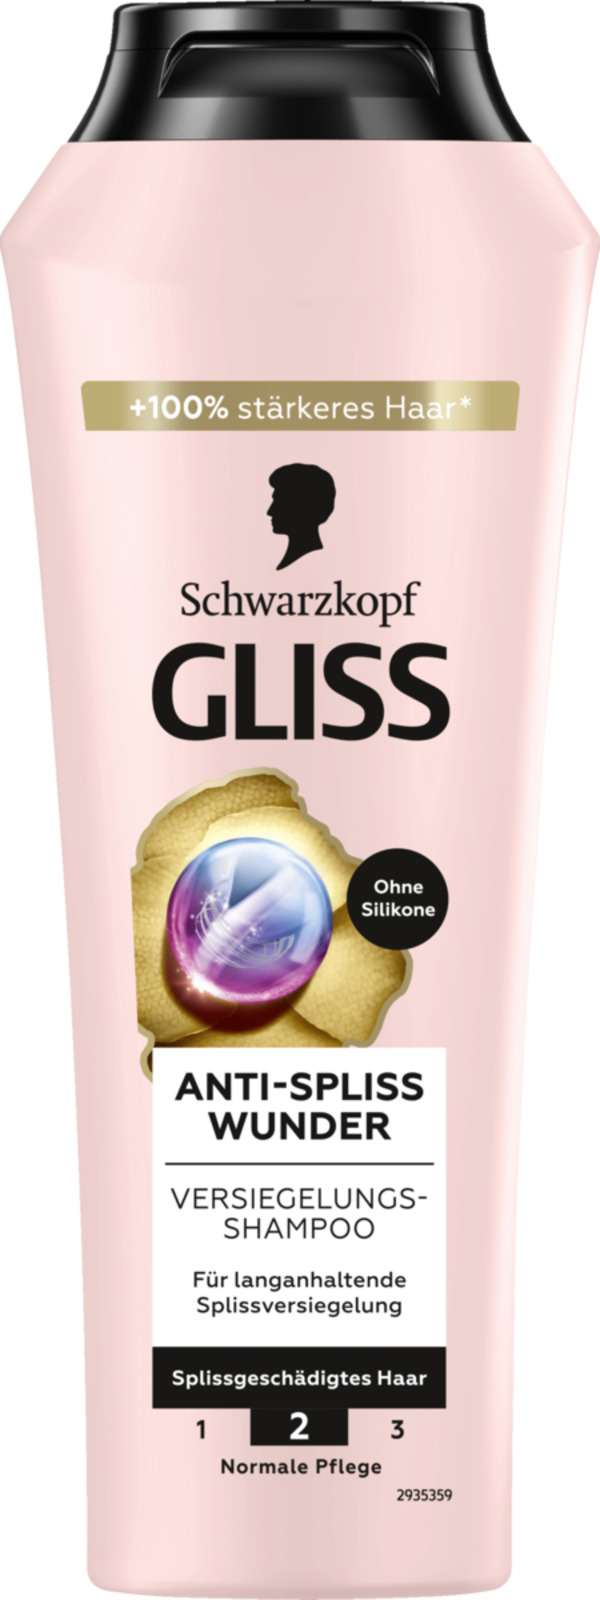 Bild 1 von Gliss Anti-Spliss Wunder Shampoo